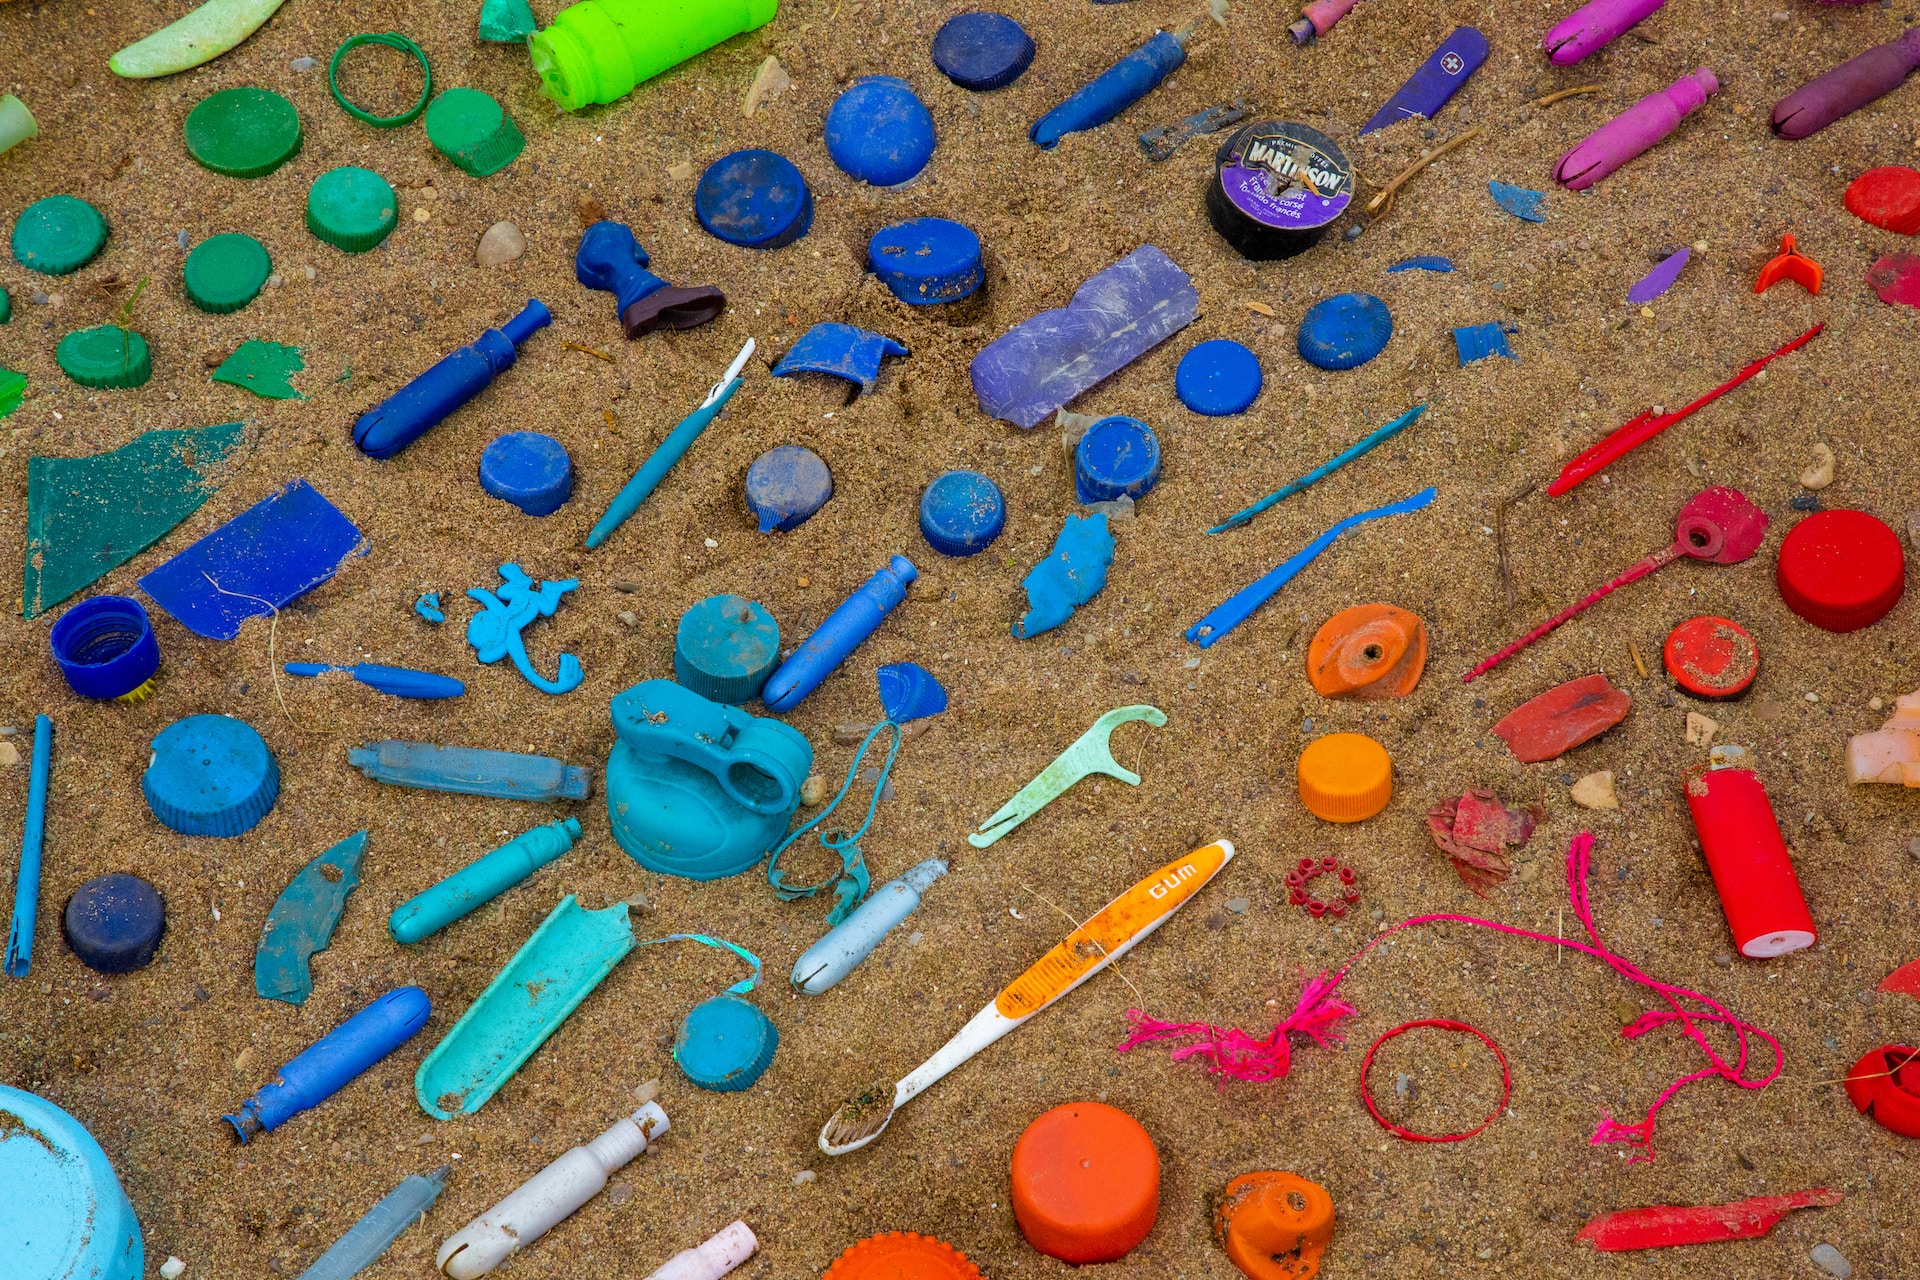 plastic waste on beach